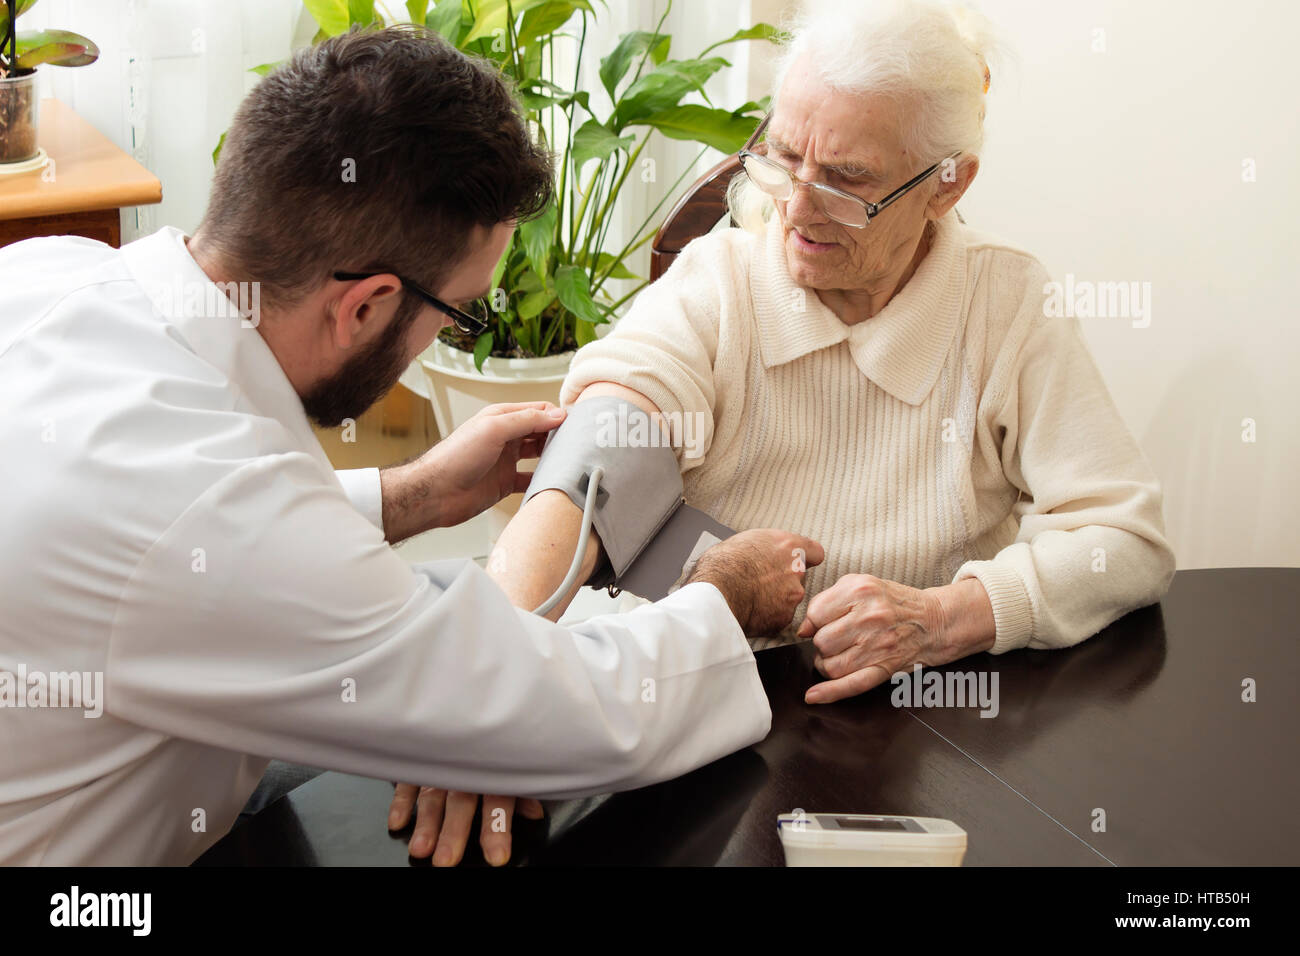 Eine private Arztpraxis. Geriater Arzt nimmt den Patienten und ihren Blutdruck messen. Stockfoto